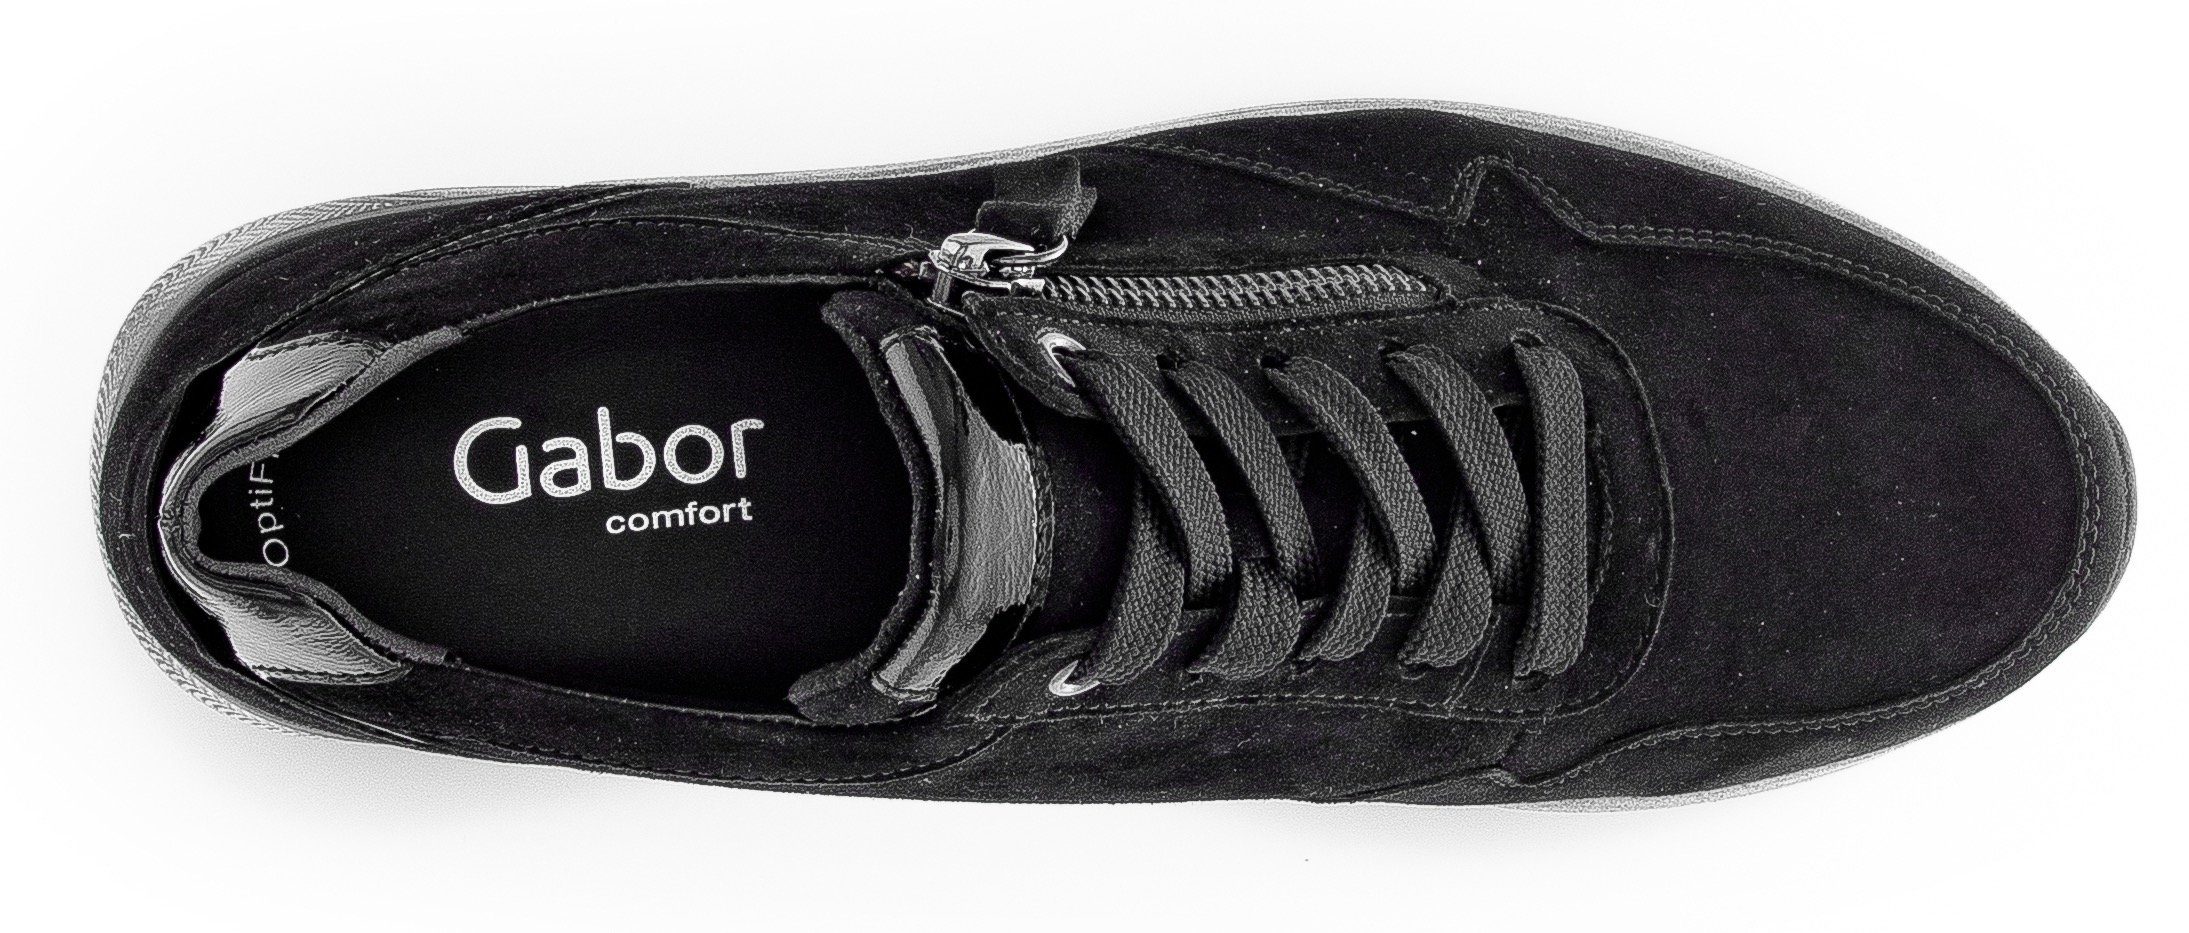 Weite Außrenreißverschluss, Davos praktischem Keilsneaker G schwarz mit Gabor